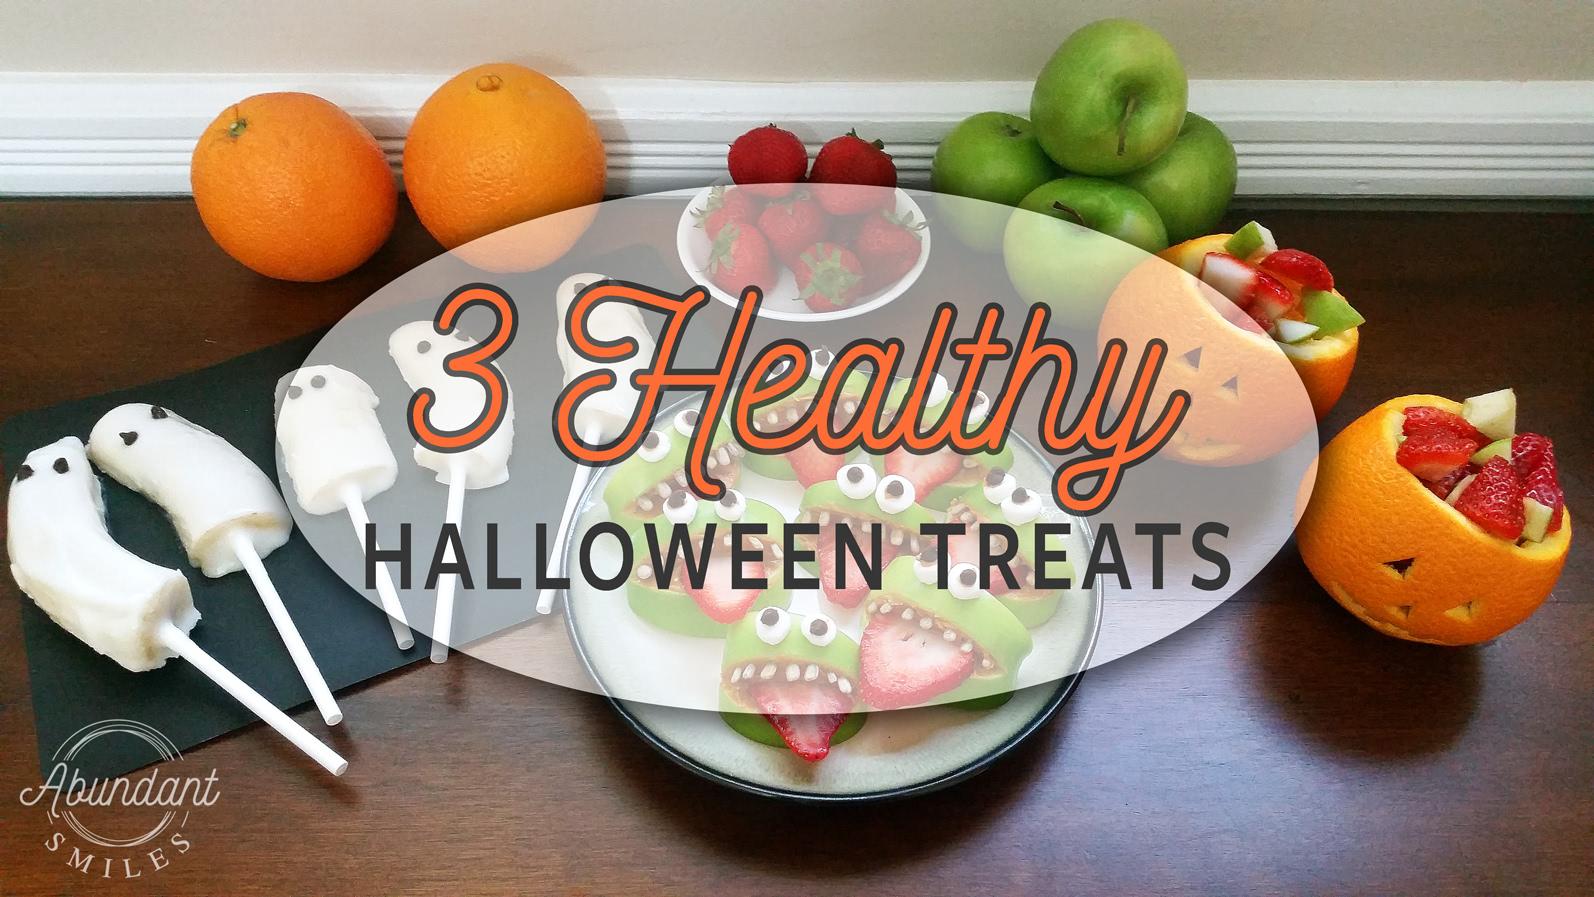 A tray of healthy halloween treats